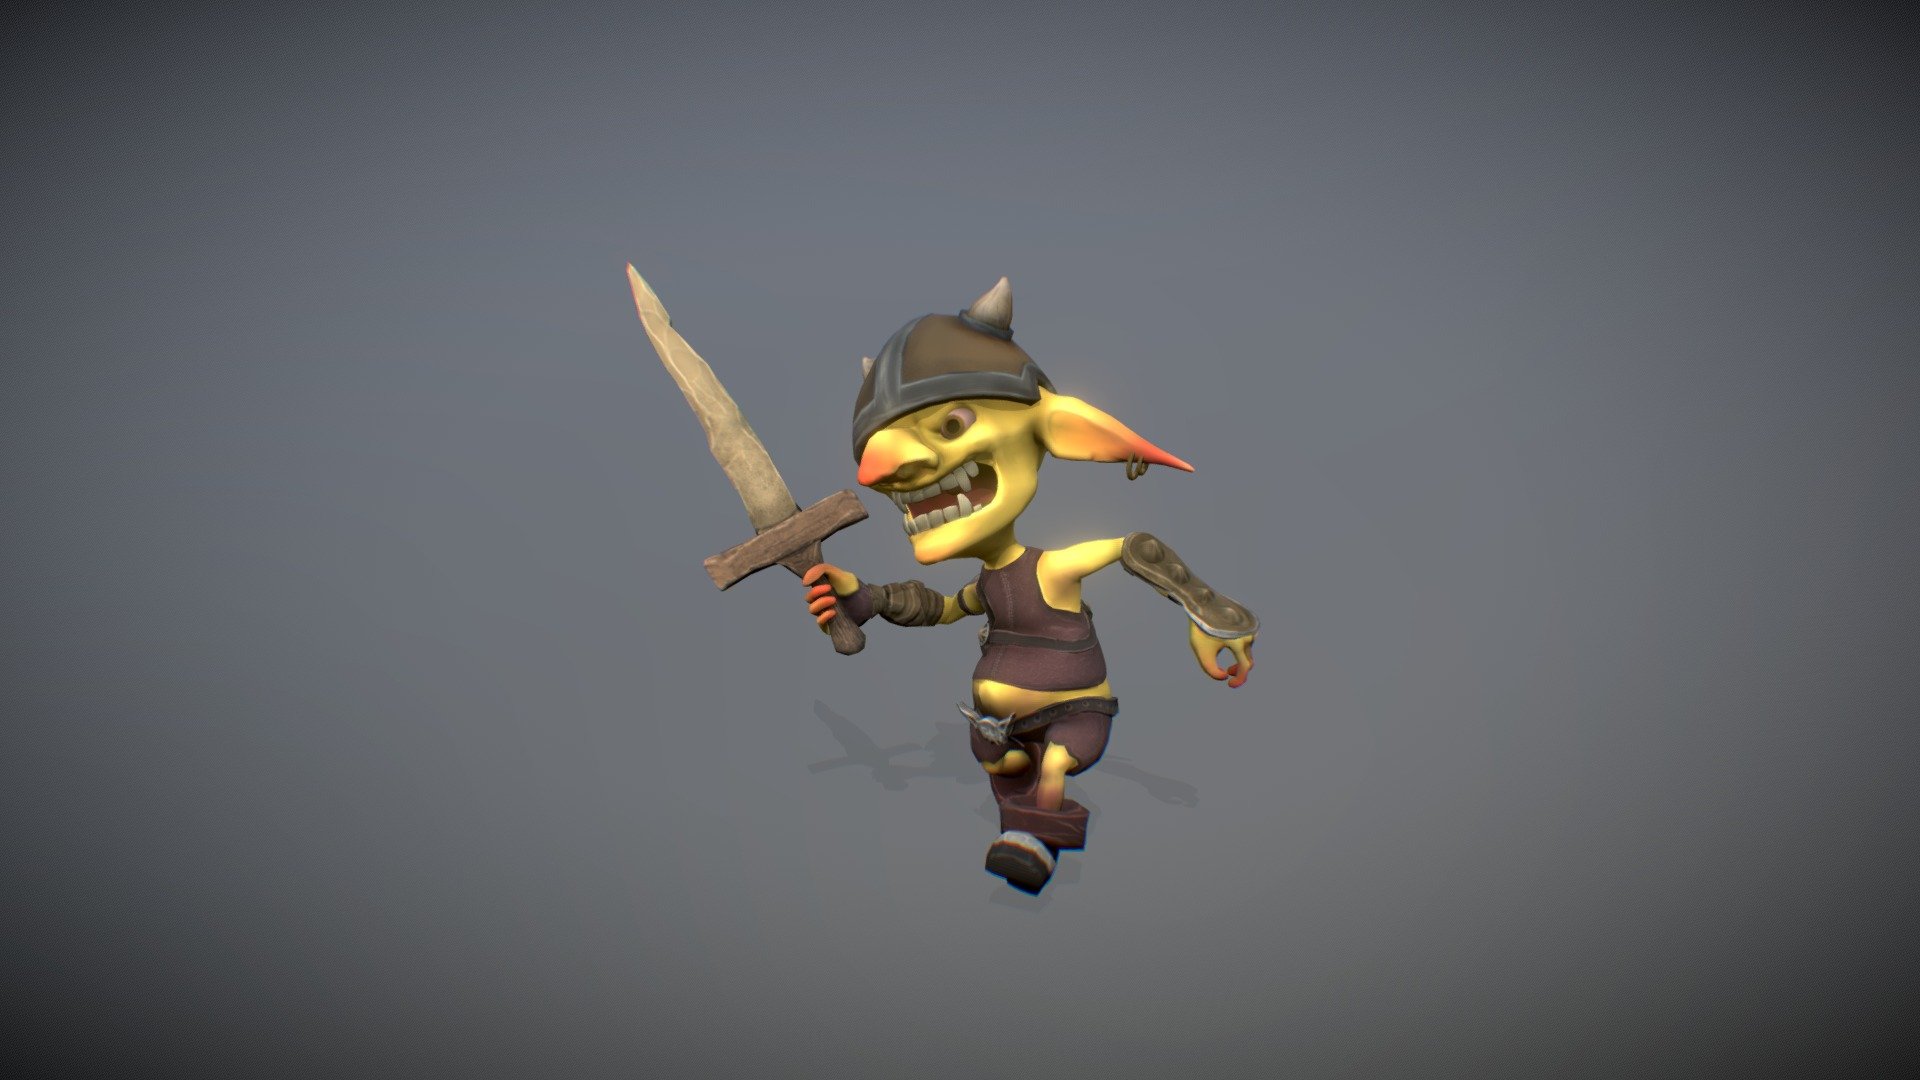 Goblin - Run with sword Animation